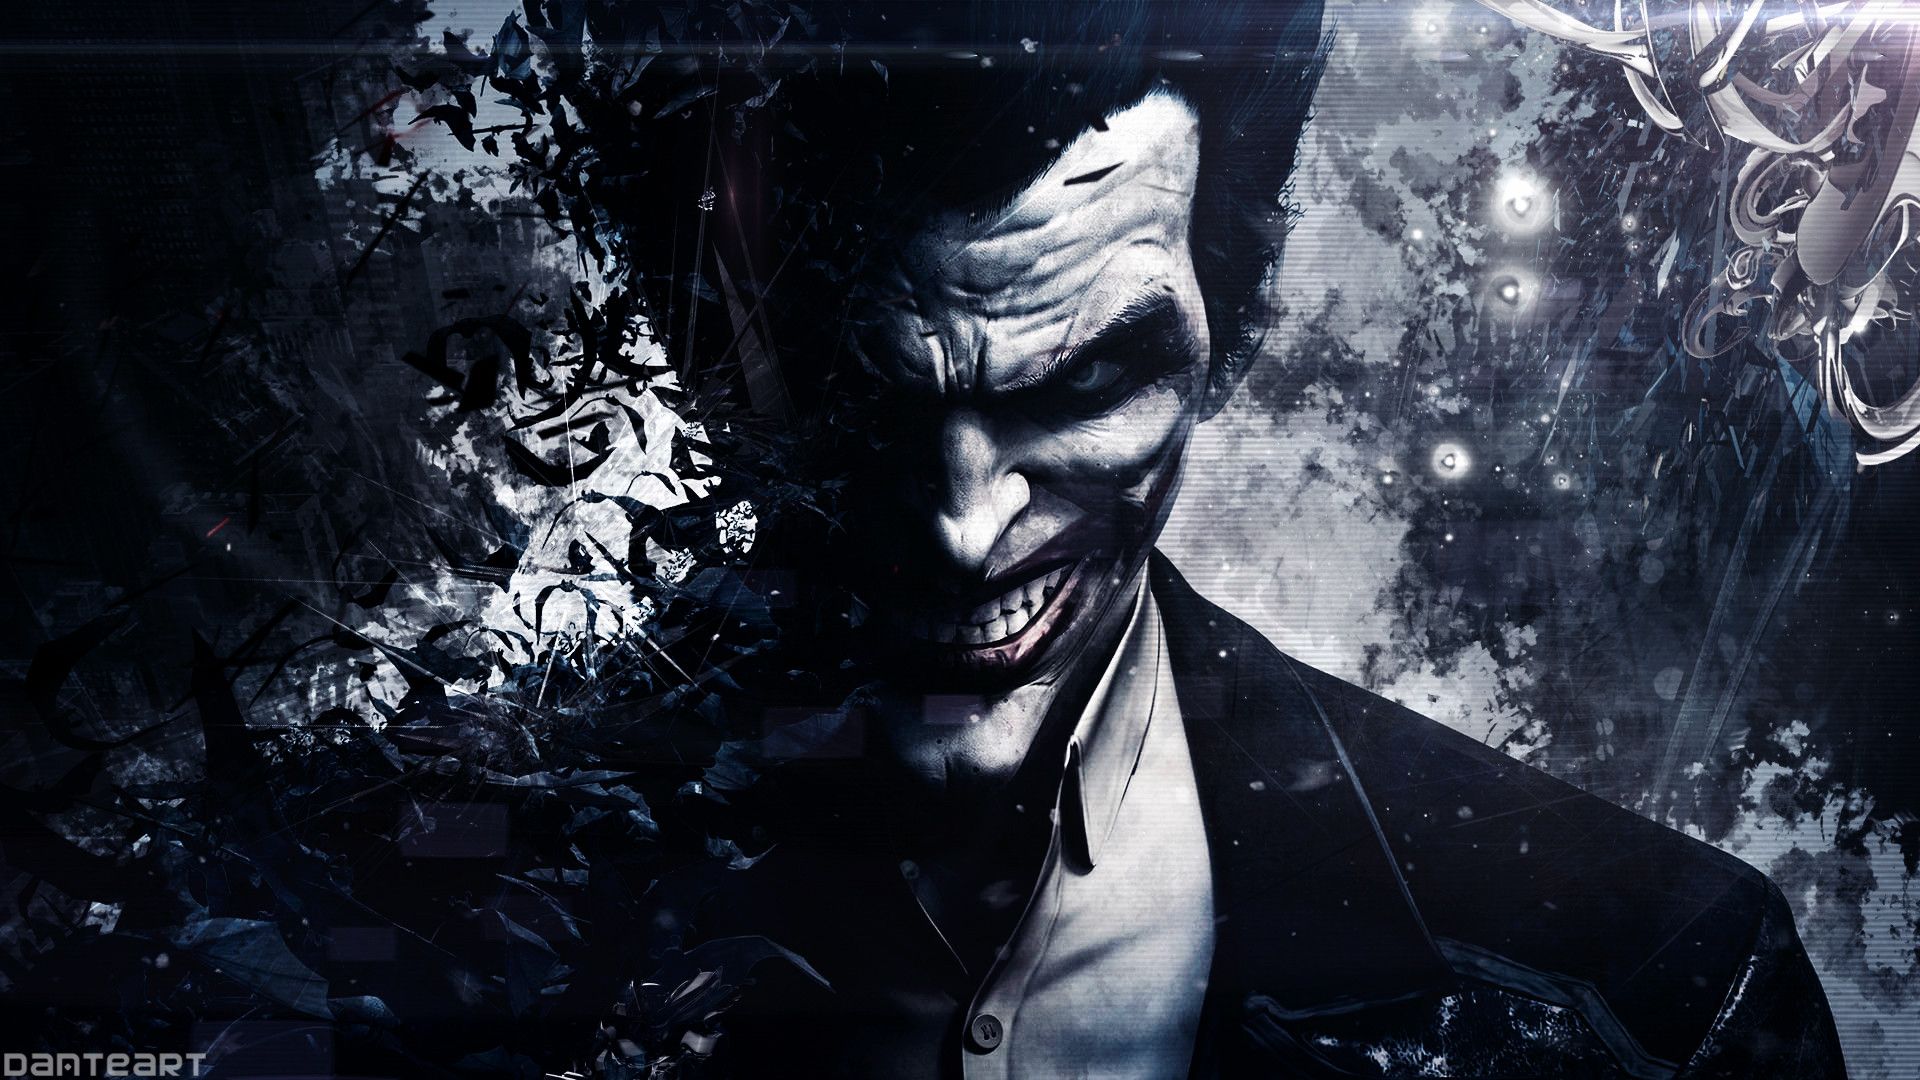 The Joker HD Wallpaper - WallpaperSafari